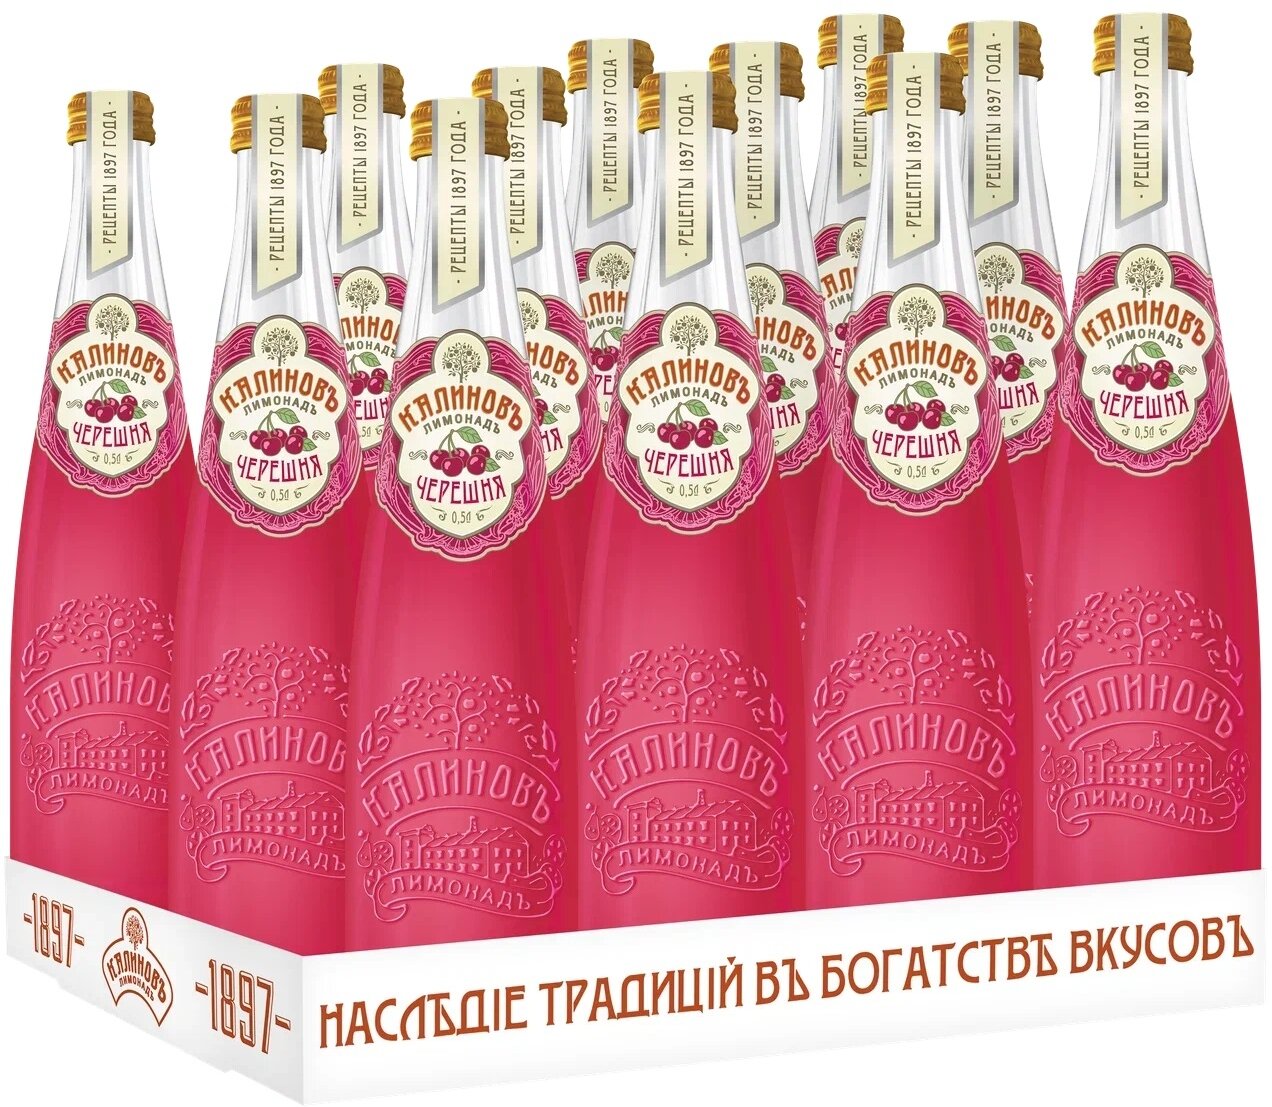 Газированный напиток Калиновъ Лимонадъ Винтажный Черешня, 0.5 л, стеклянная бутылка, 12 шт.